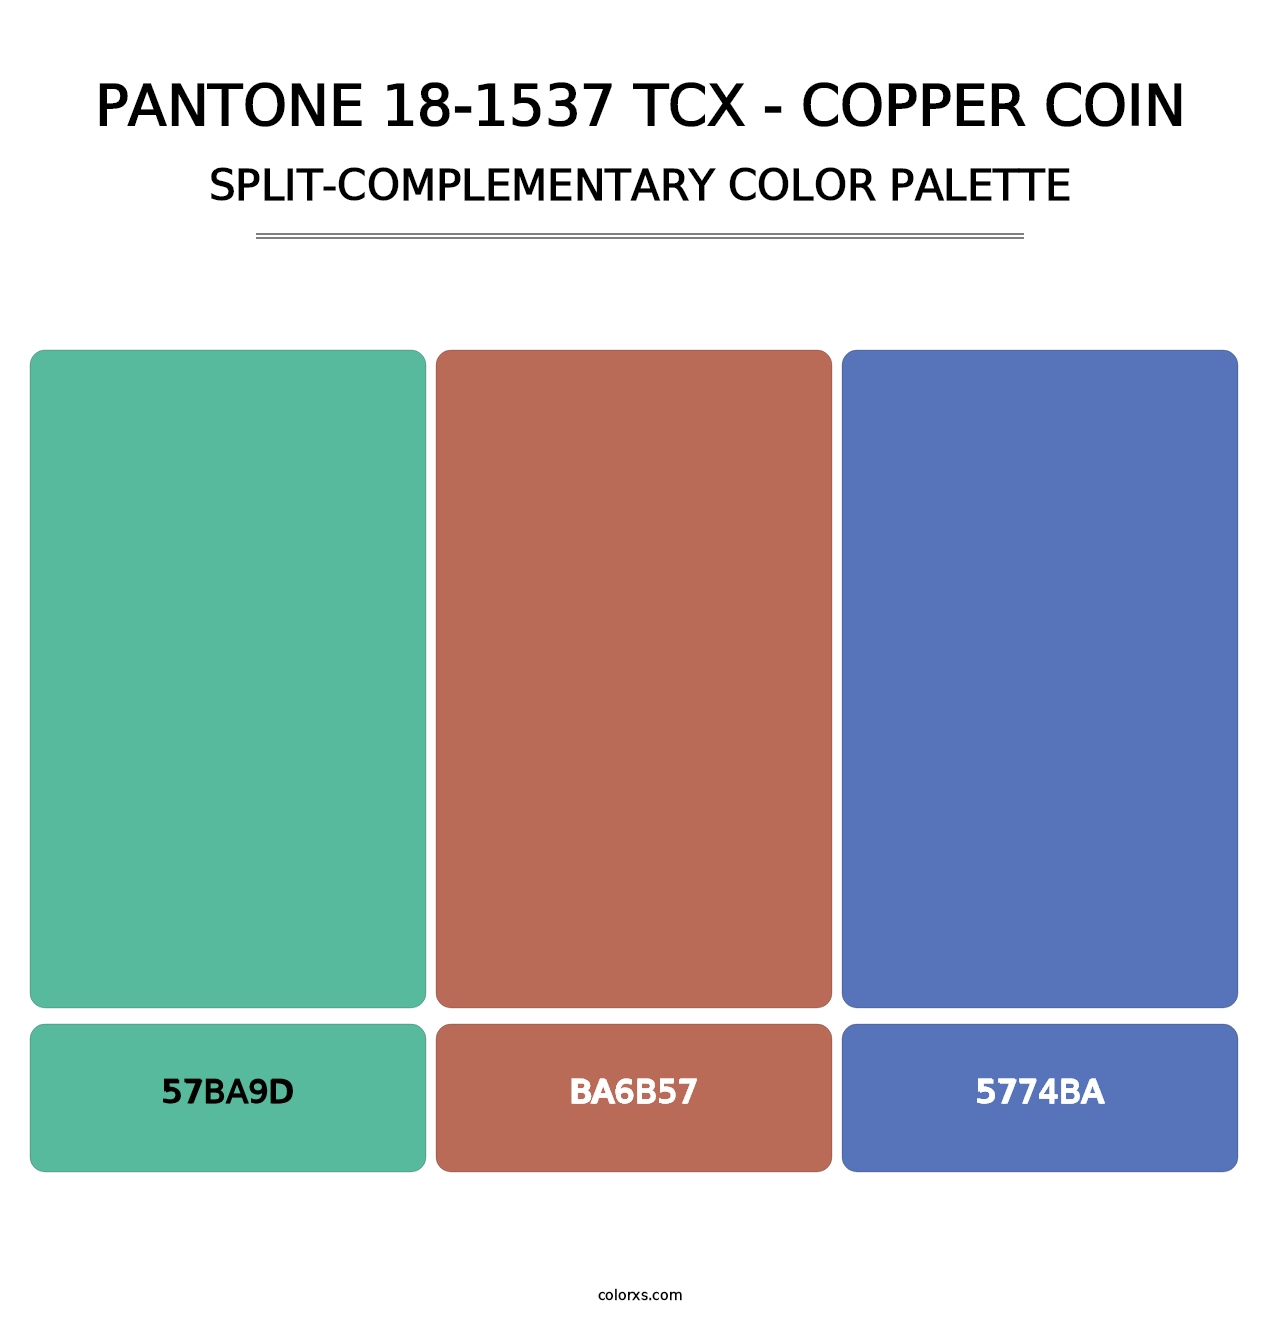 PANTONE 18-1537 TCX - Copper Coin - Split-Complementary Color Palette